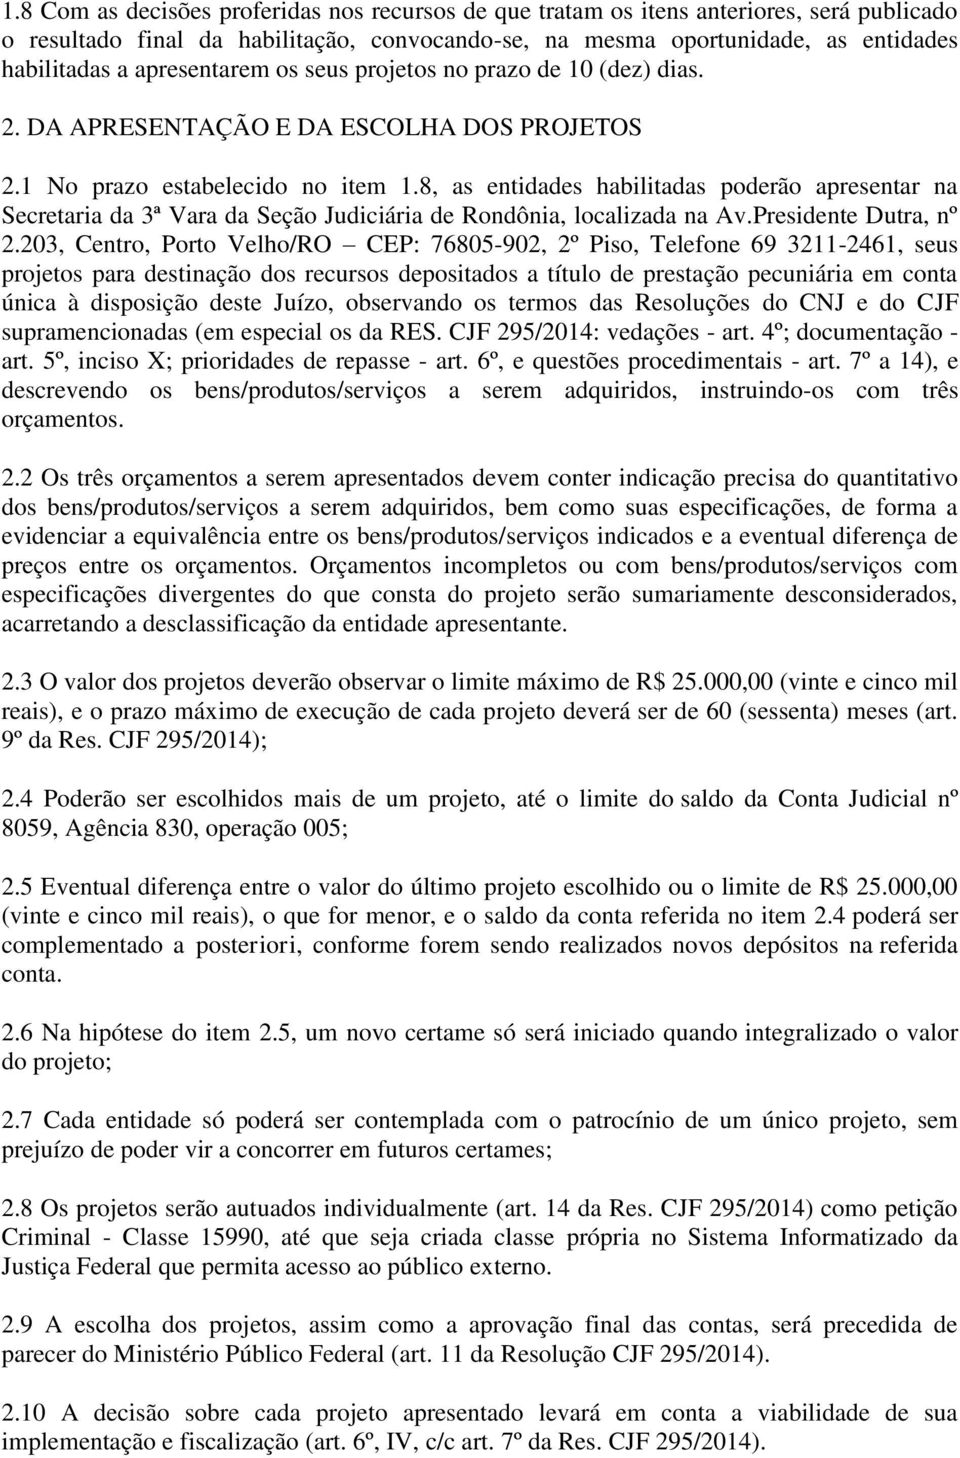 8, as entidades habilitadas poderão apresentar na Secretaria da 3ª Vara da Seção Judiciária de Rondônia, localizada na Av.Presidente Dutra, nº 2.